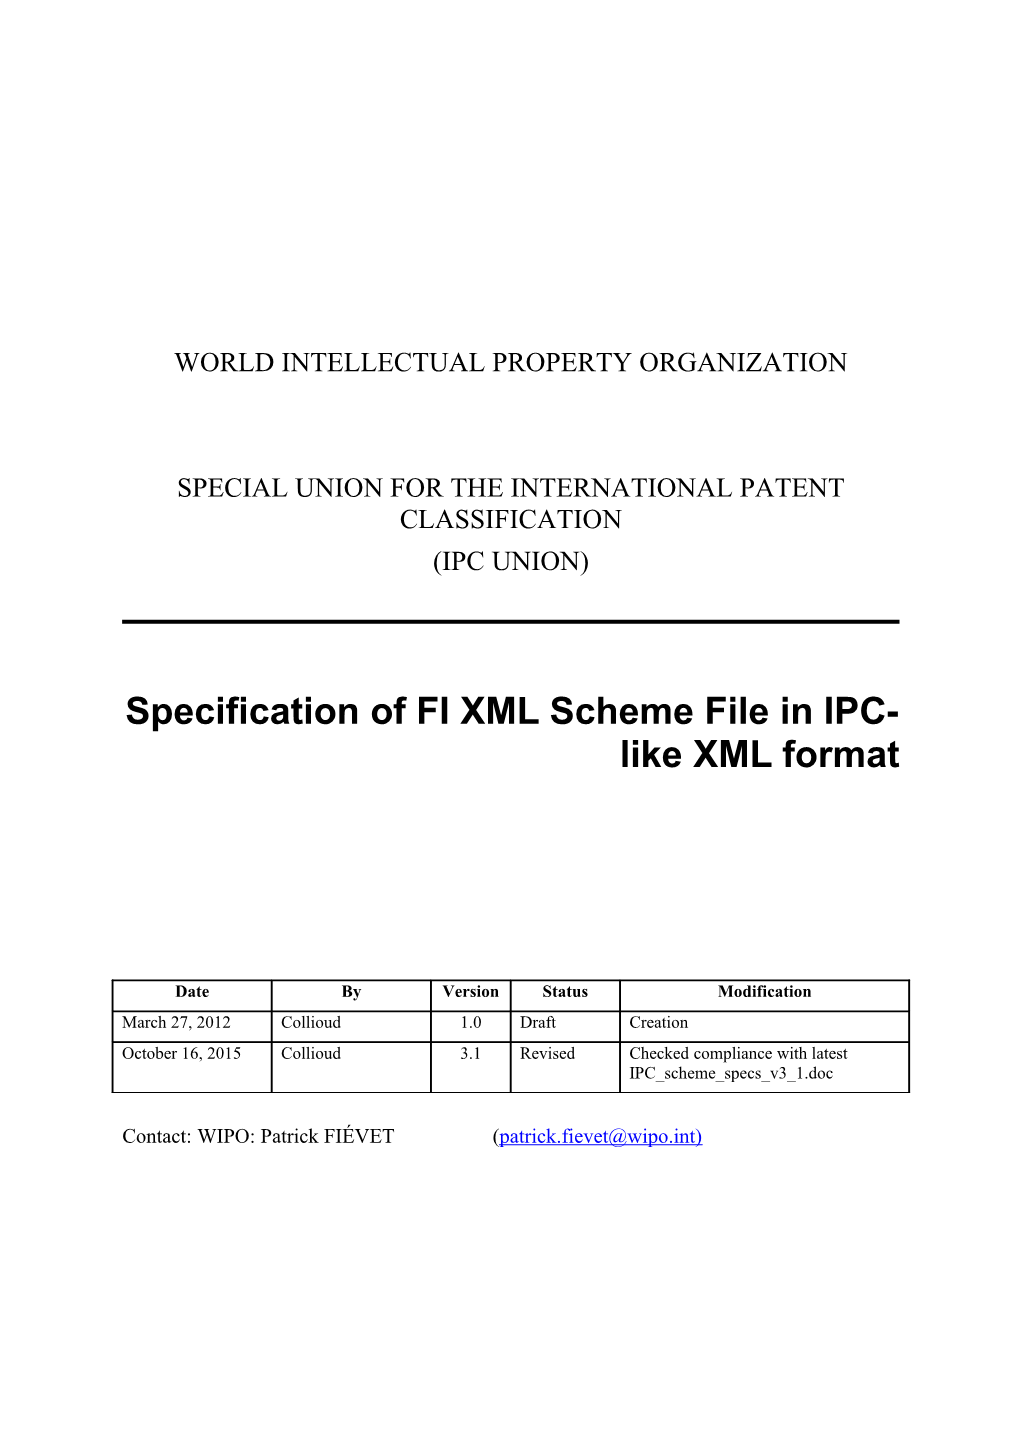 Specification of FI XML Scheme File in IPC-Like XML Format